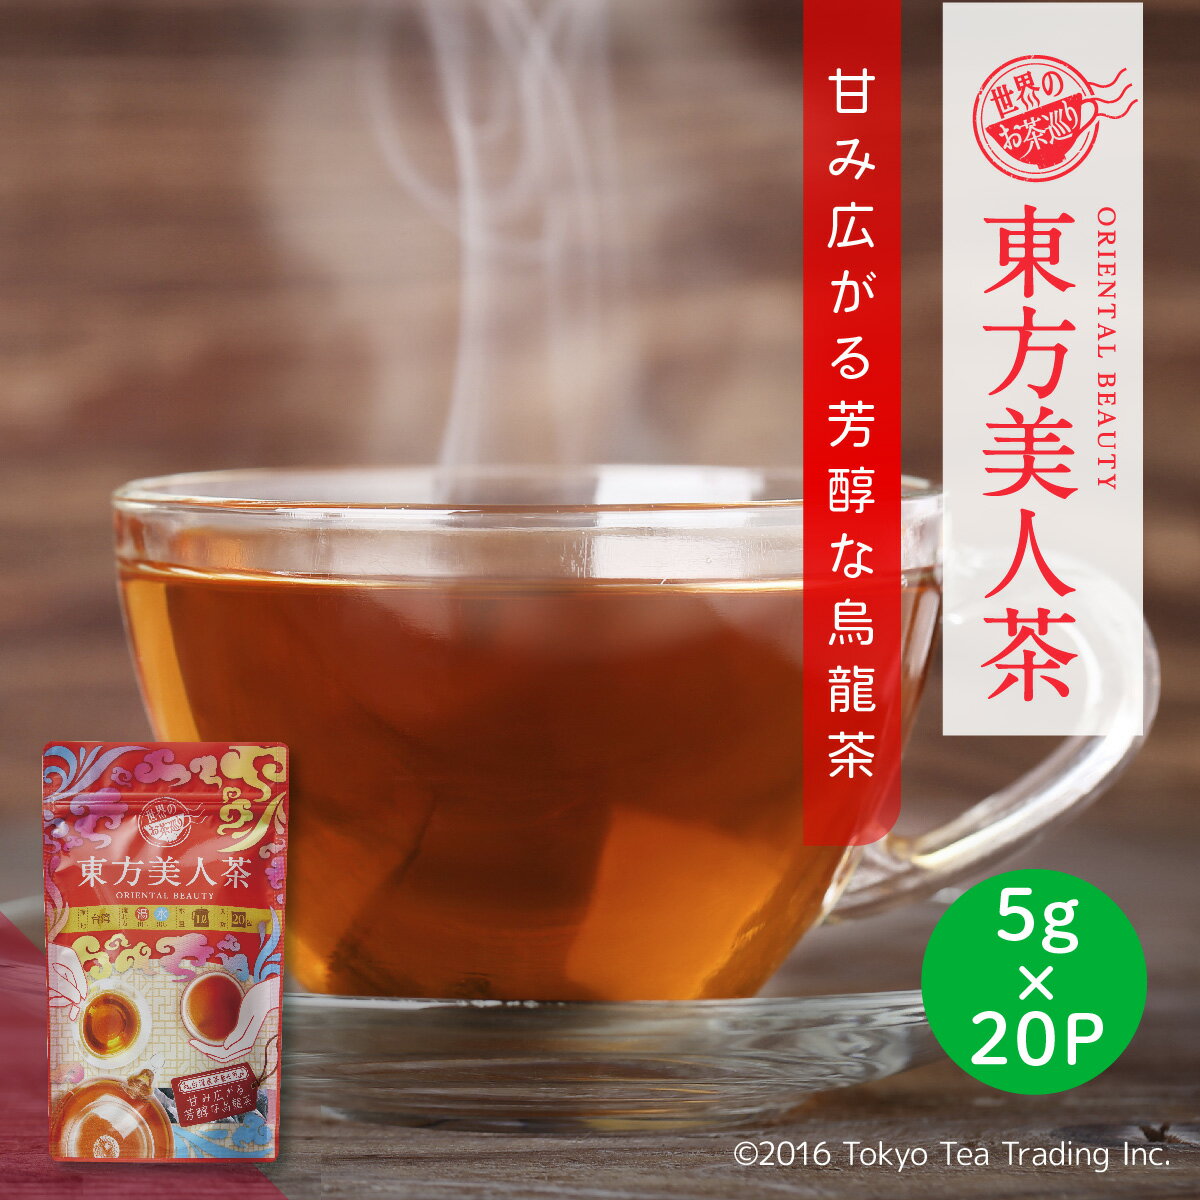 Tokyo Tea Trading 東方美人茶 台湾茶 烏龍茶 ティーパック ティーバッグ 茶葉 無添加 台湾 手土産 （お徳用 水出し お茶 5g×20P）